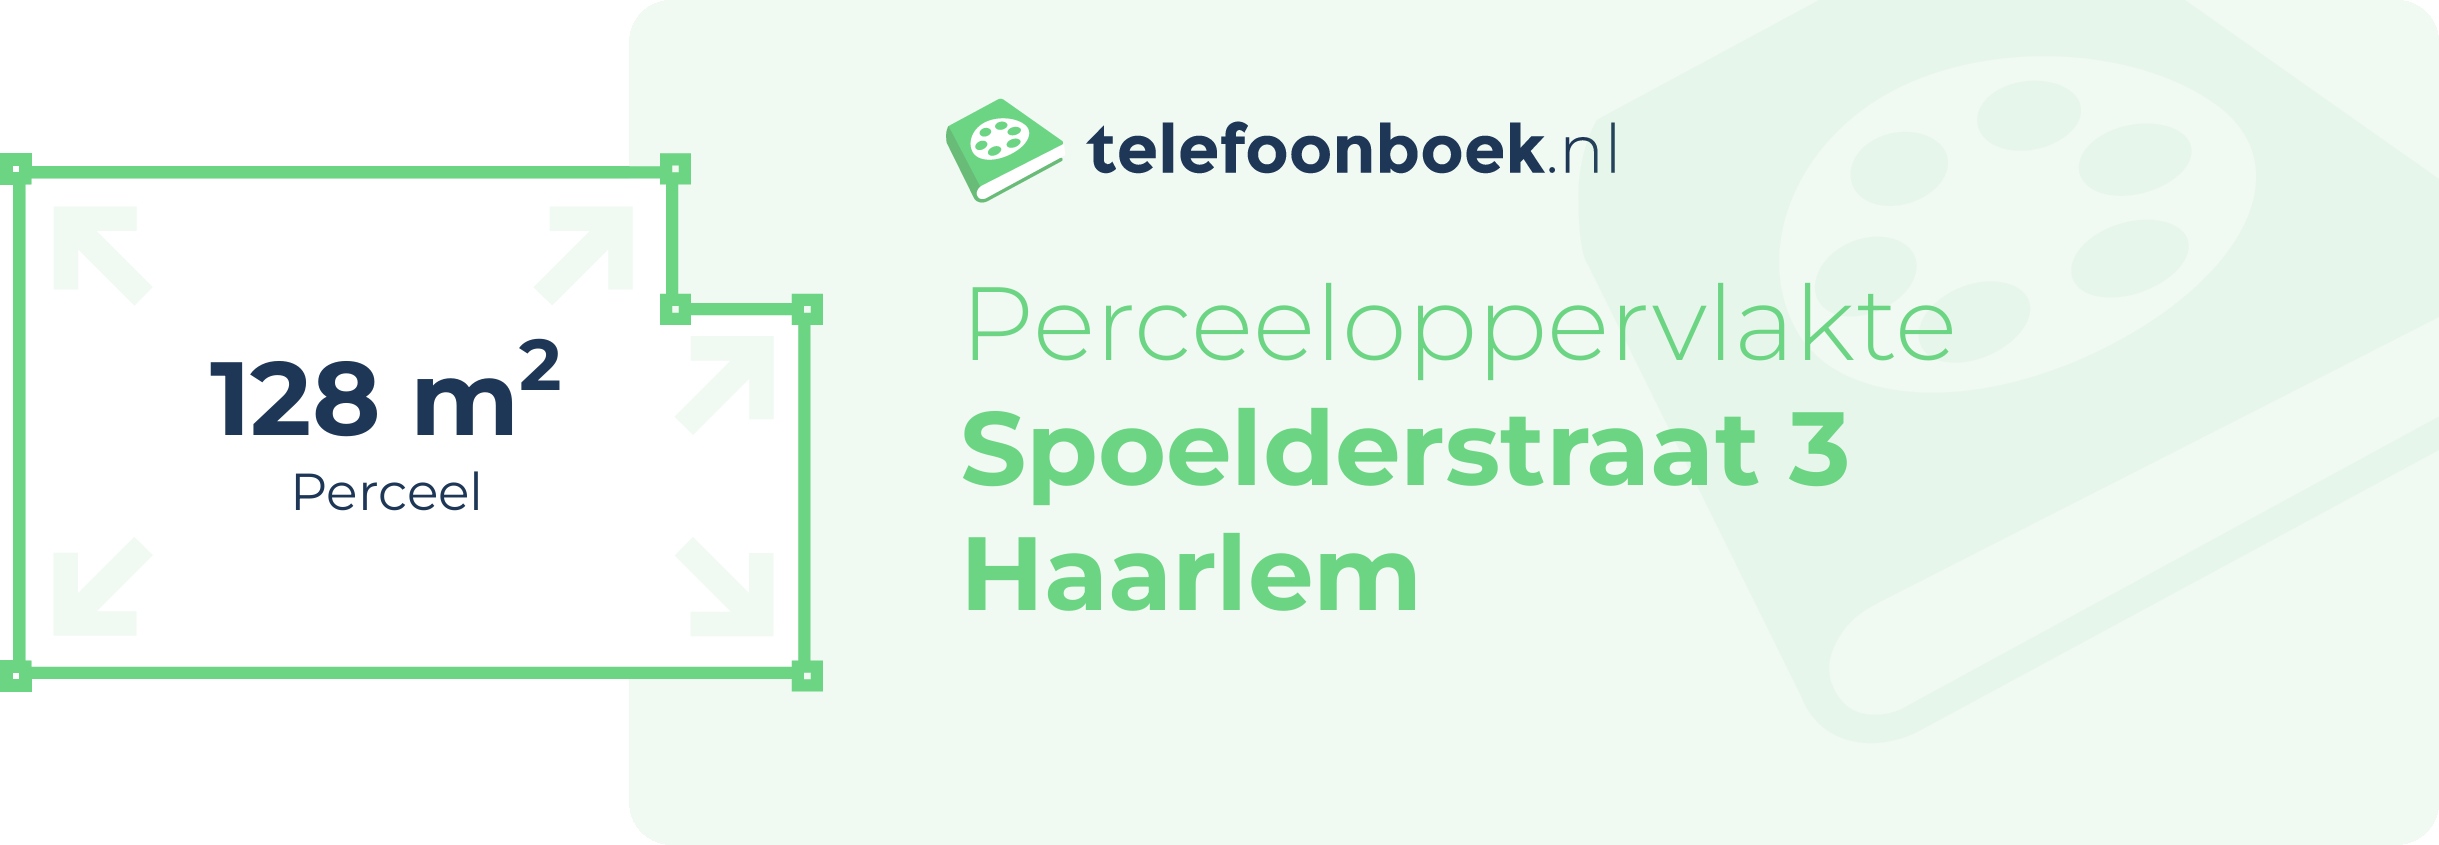 Perceeloppervlakte Spoelderstraat 3 Haarlem